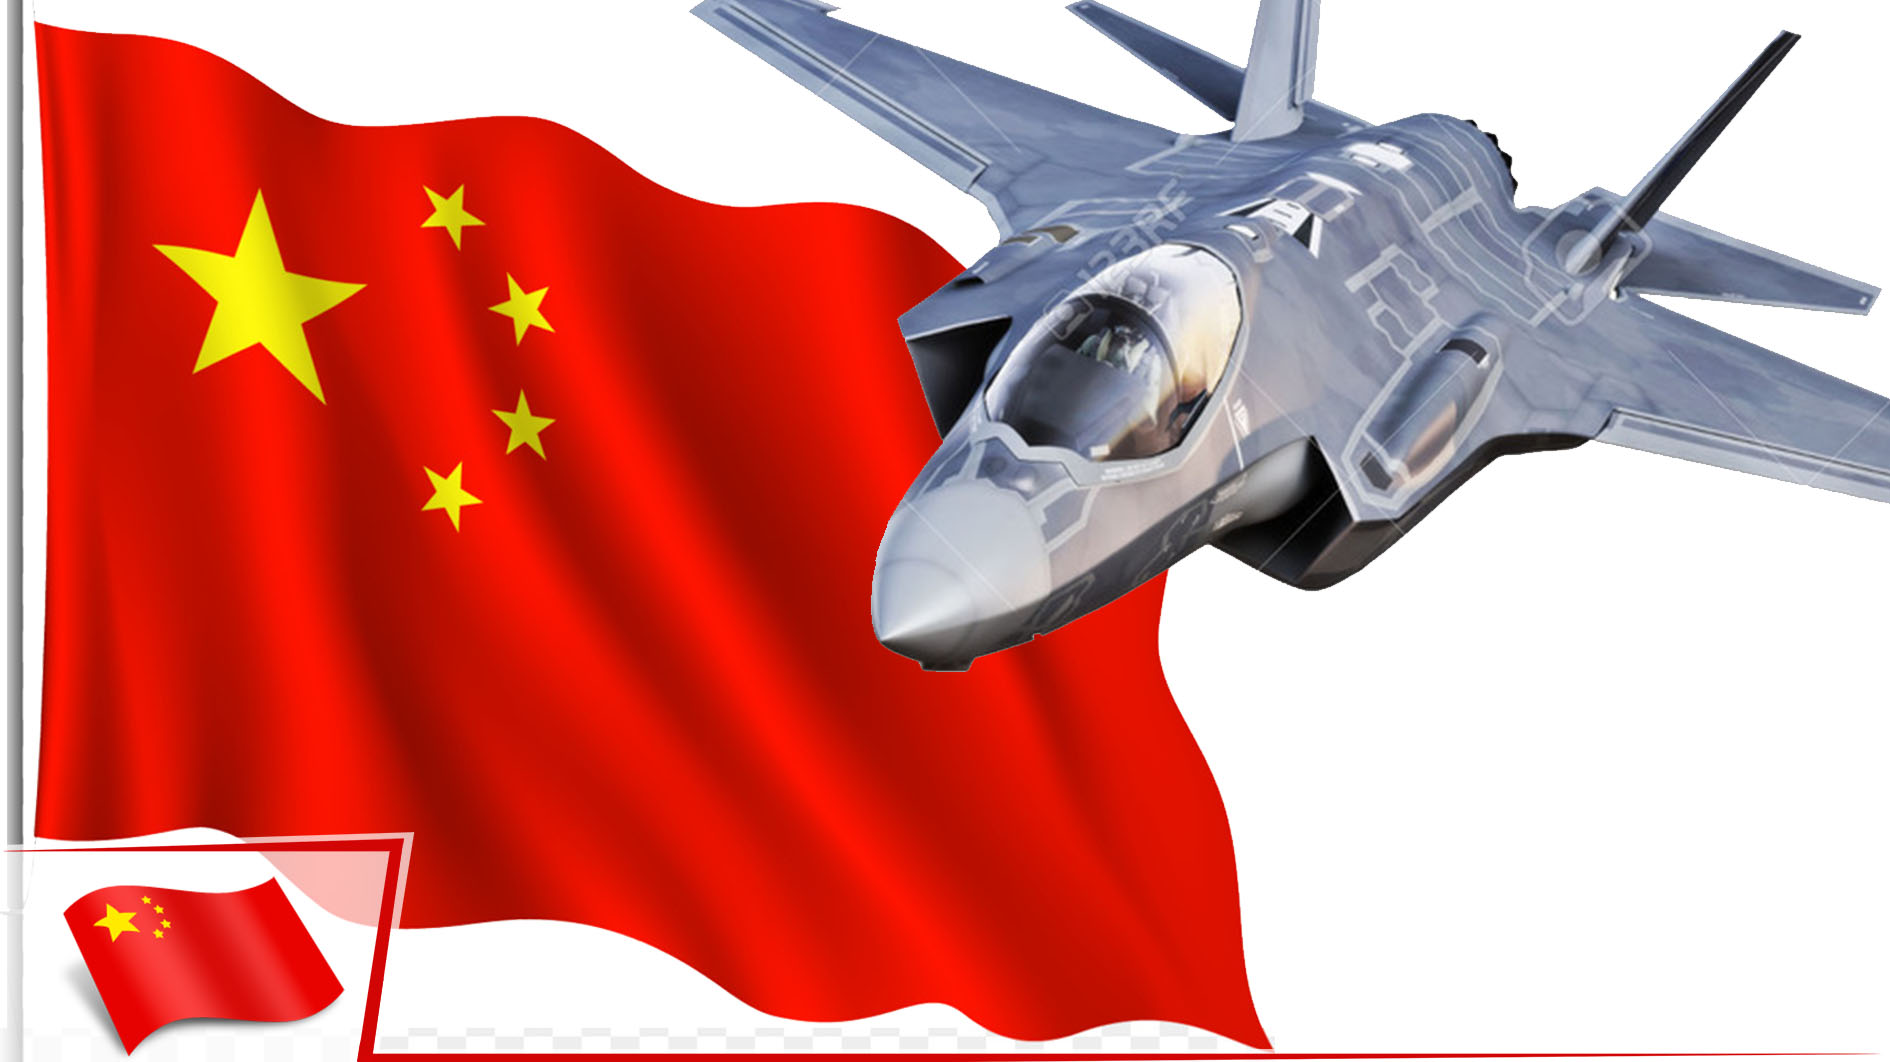 Çin, F-35 ve F-22 savaş uçaklarının gizli bilgilerini ele geçirdi